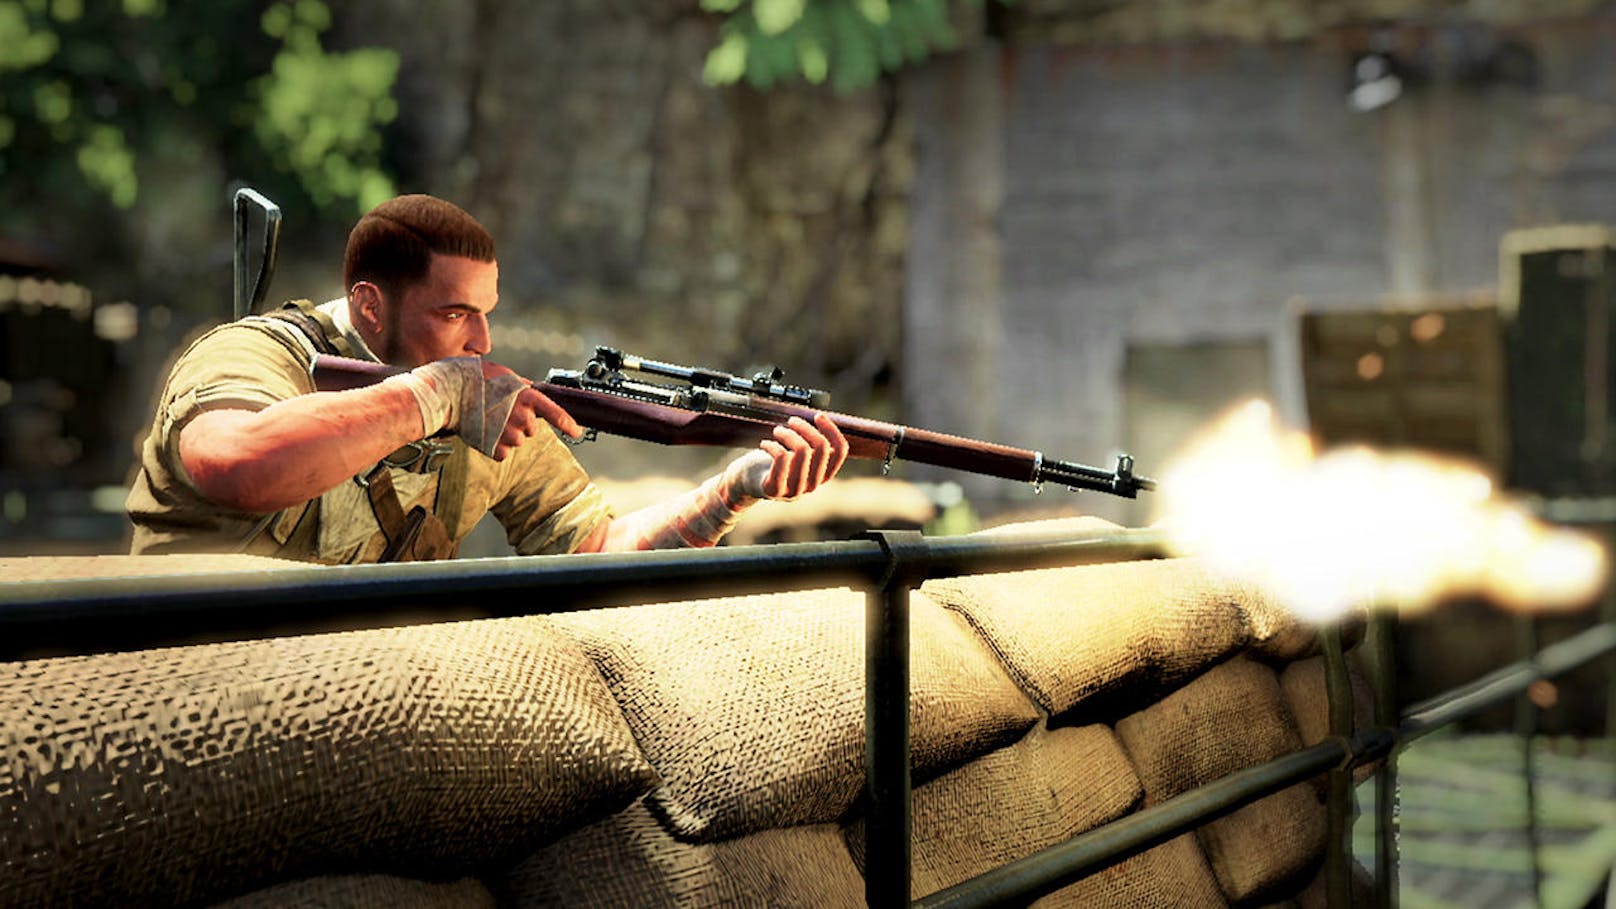 "Sniper Elite"-typisch wird auch in Teil 3 und der Ultimate Edition, die es neu für Nintendos Hybridkonsole Switch gibt, mit dem Scharfschützengewehr Jagd auf Nazis gemacht. Schauplatz ist Nordafrika im Jahr 1942.